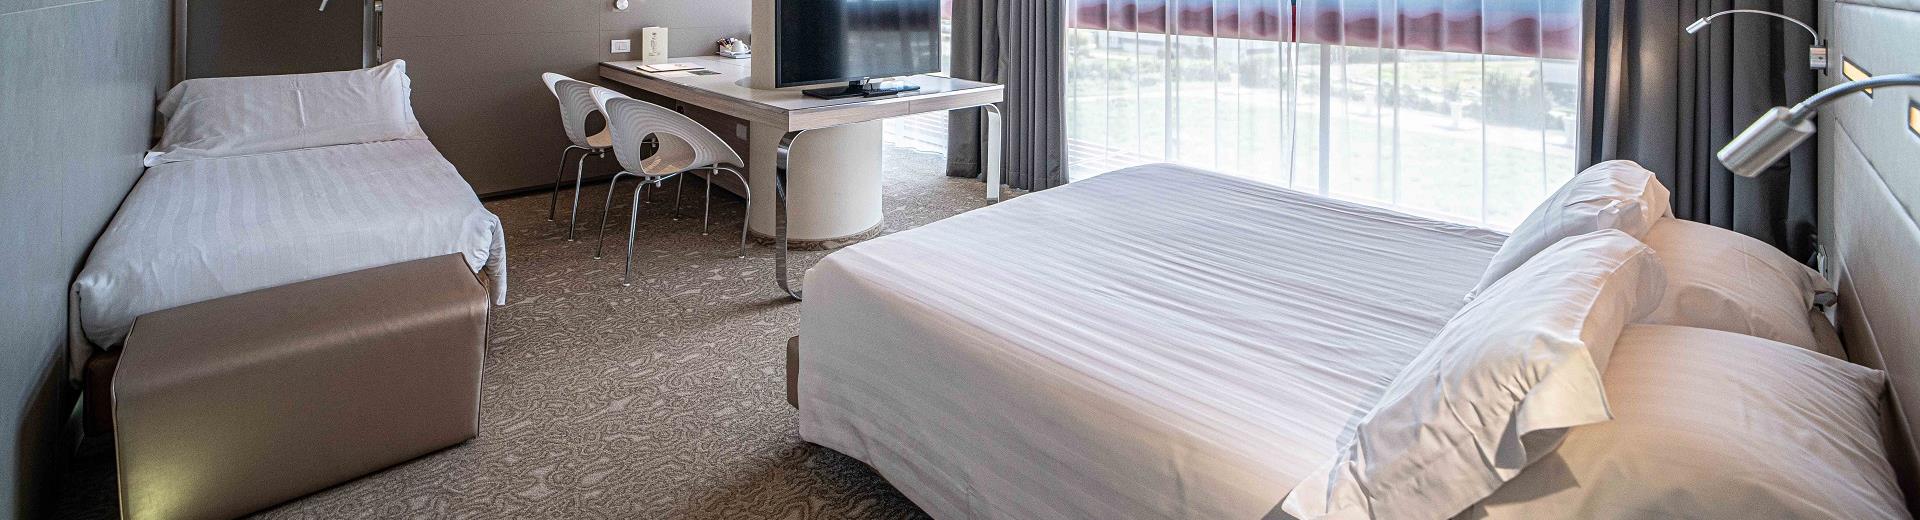 Camere di comfort a Padova in hotel 4 stelle